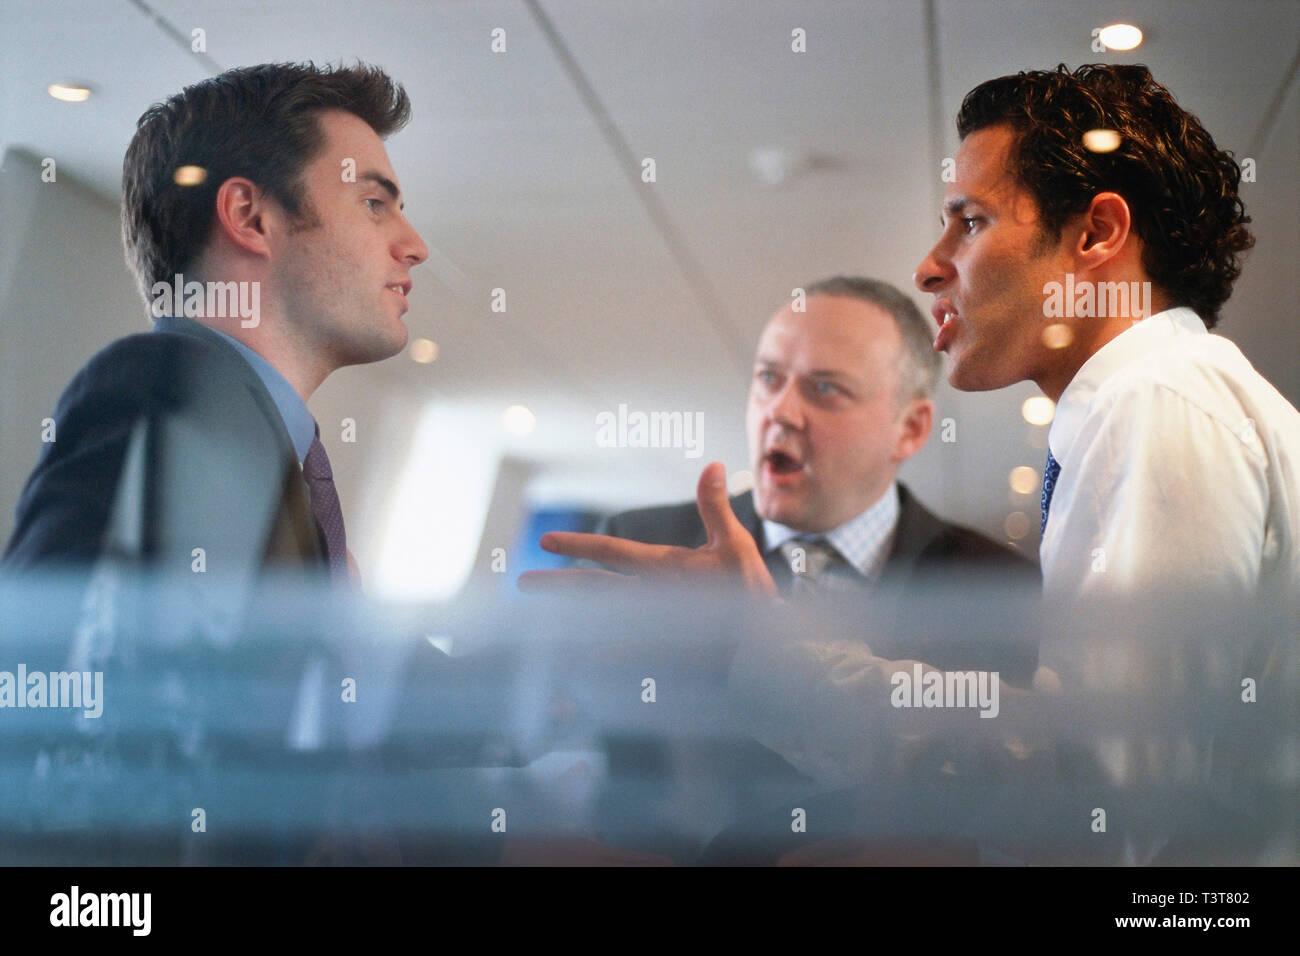 Caucasian businessmen arguing in office Stock Photo